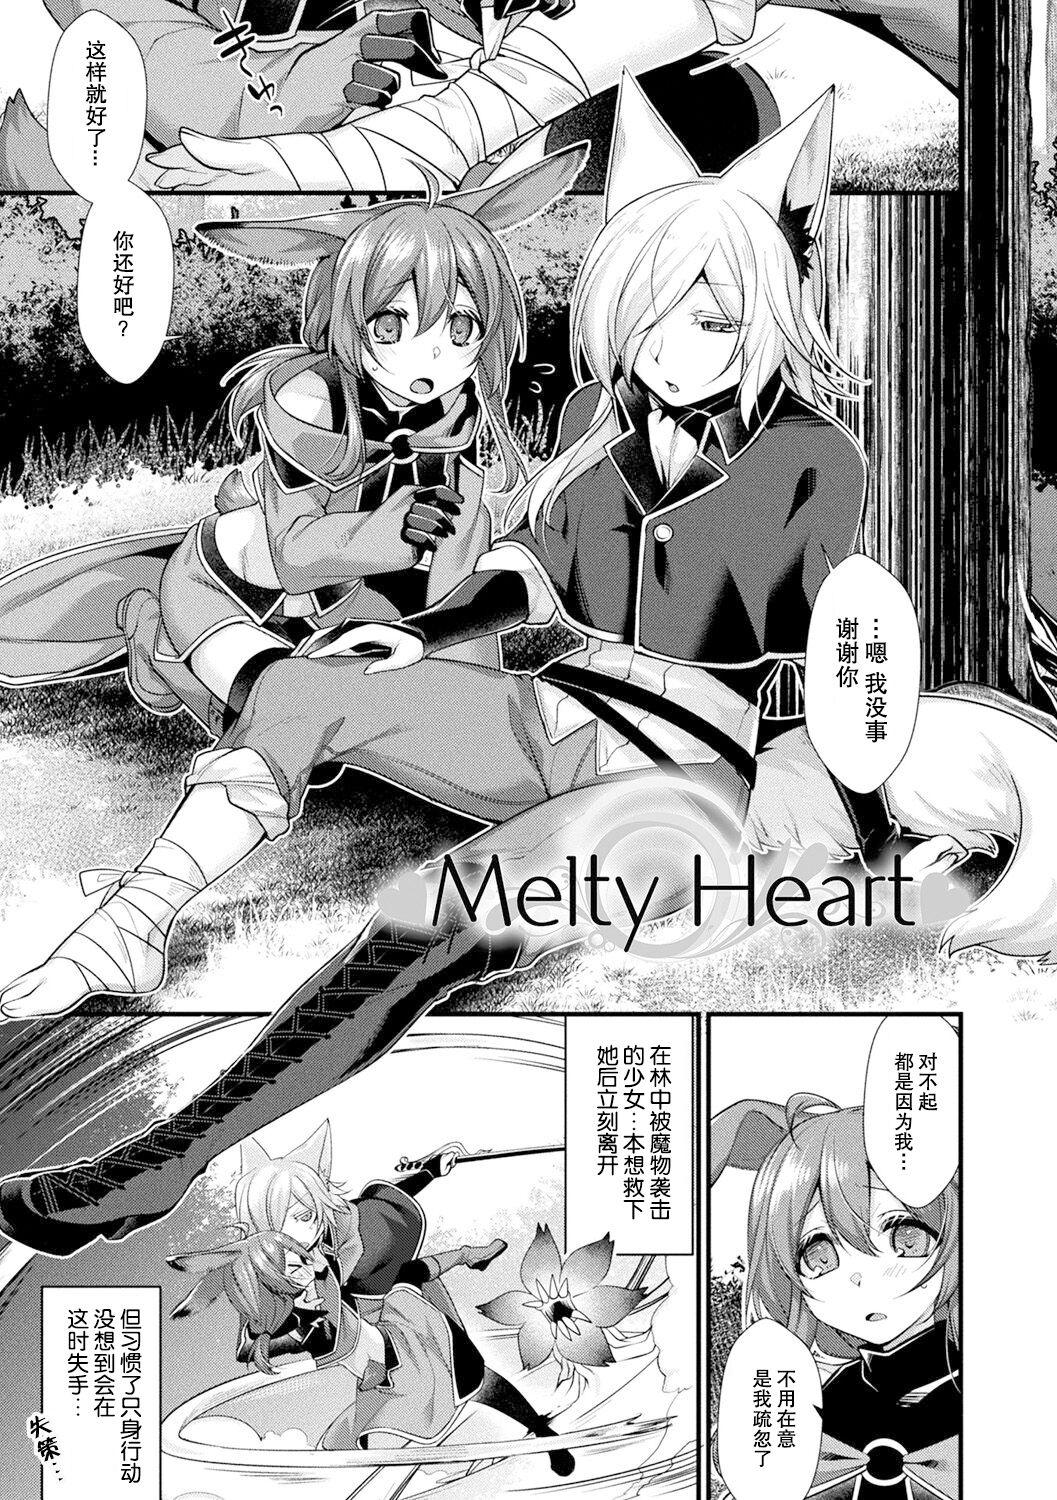 Melty Heart 1